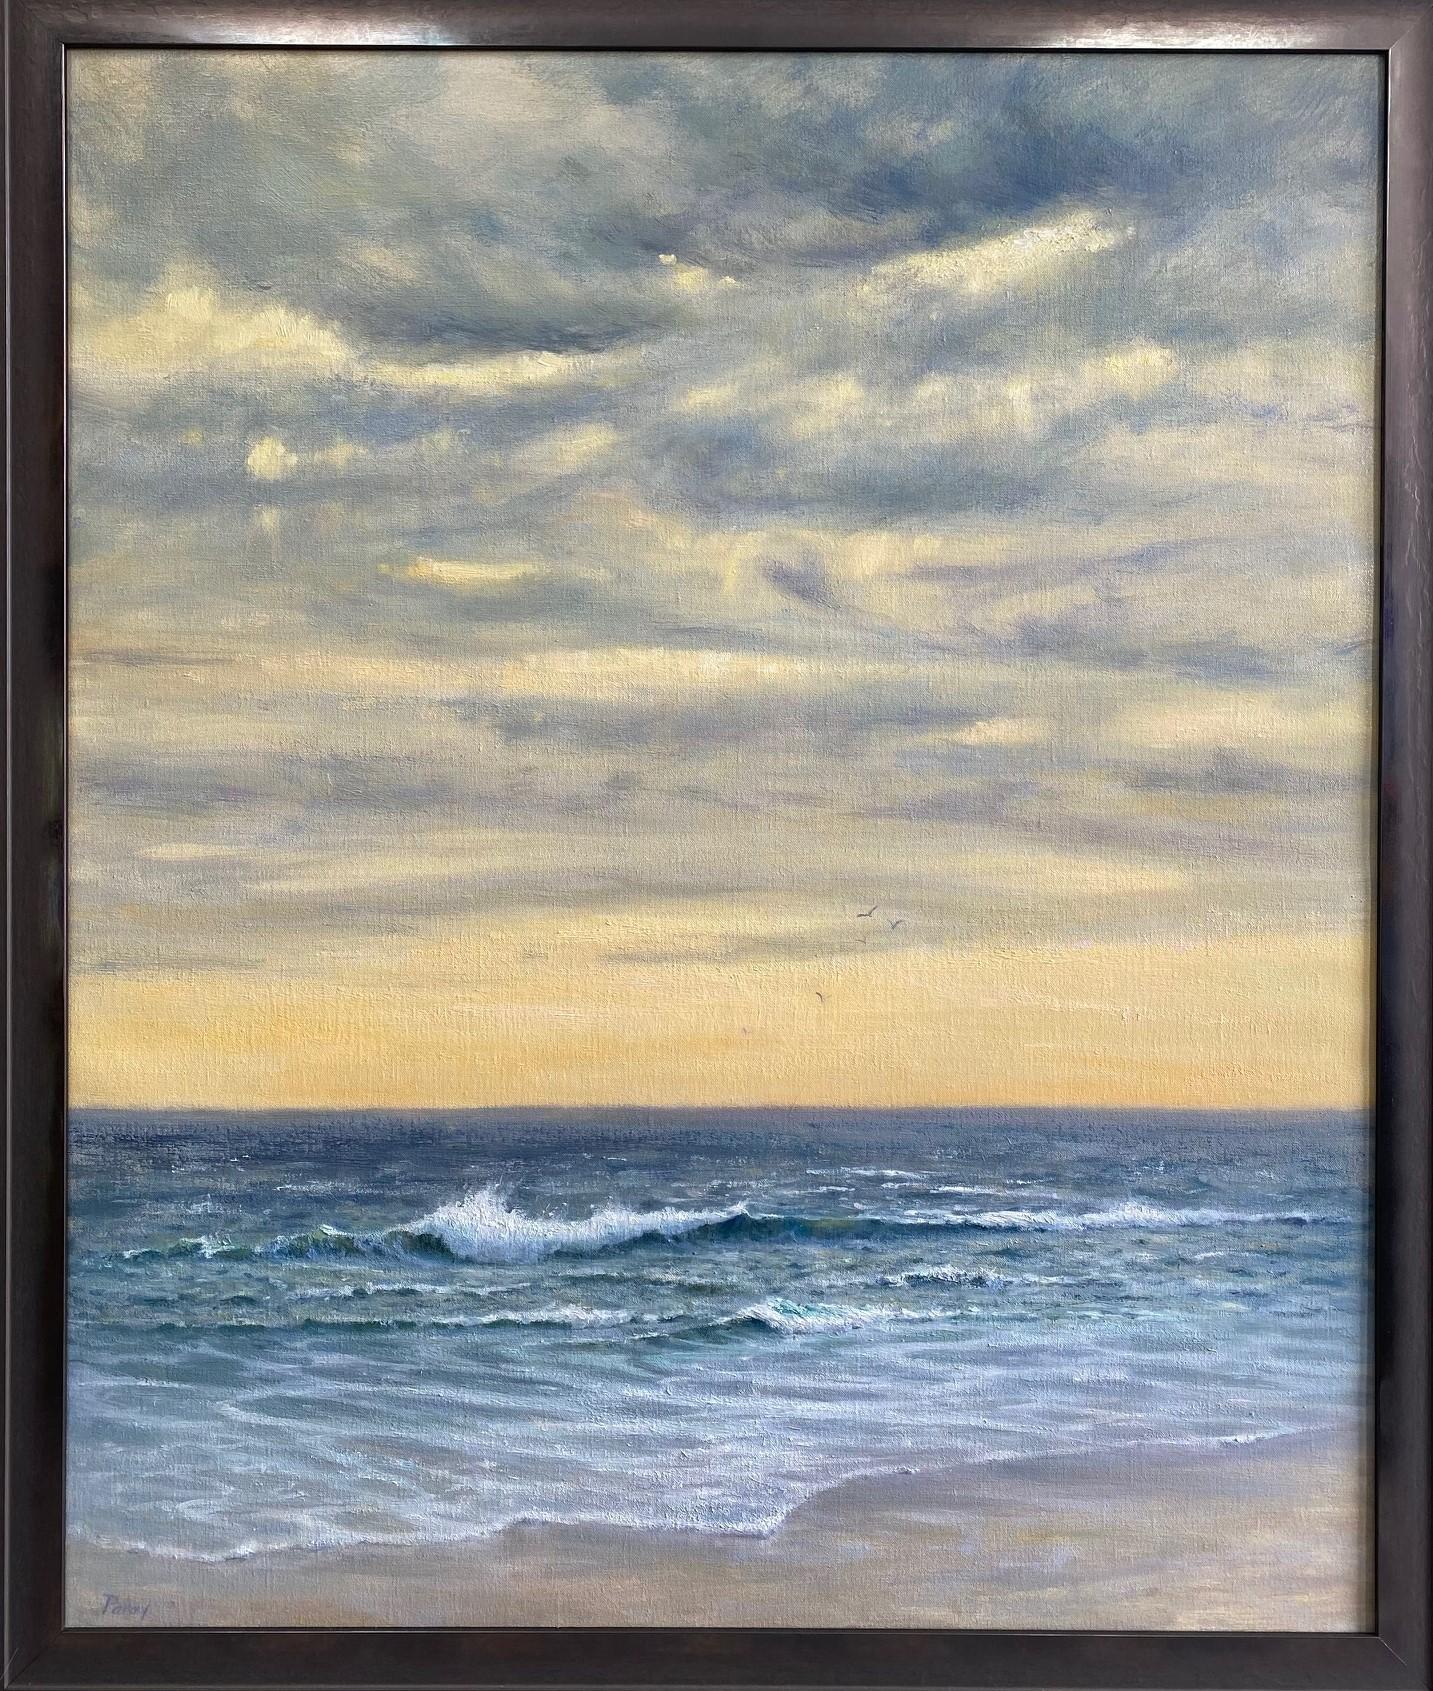 Landscape Painting Laura Paray - Le ciel en marbre, paysage marin impressionniste contemporain original 36x30